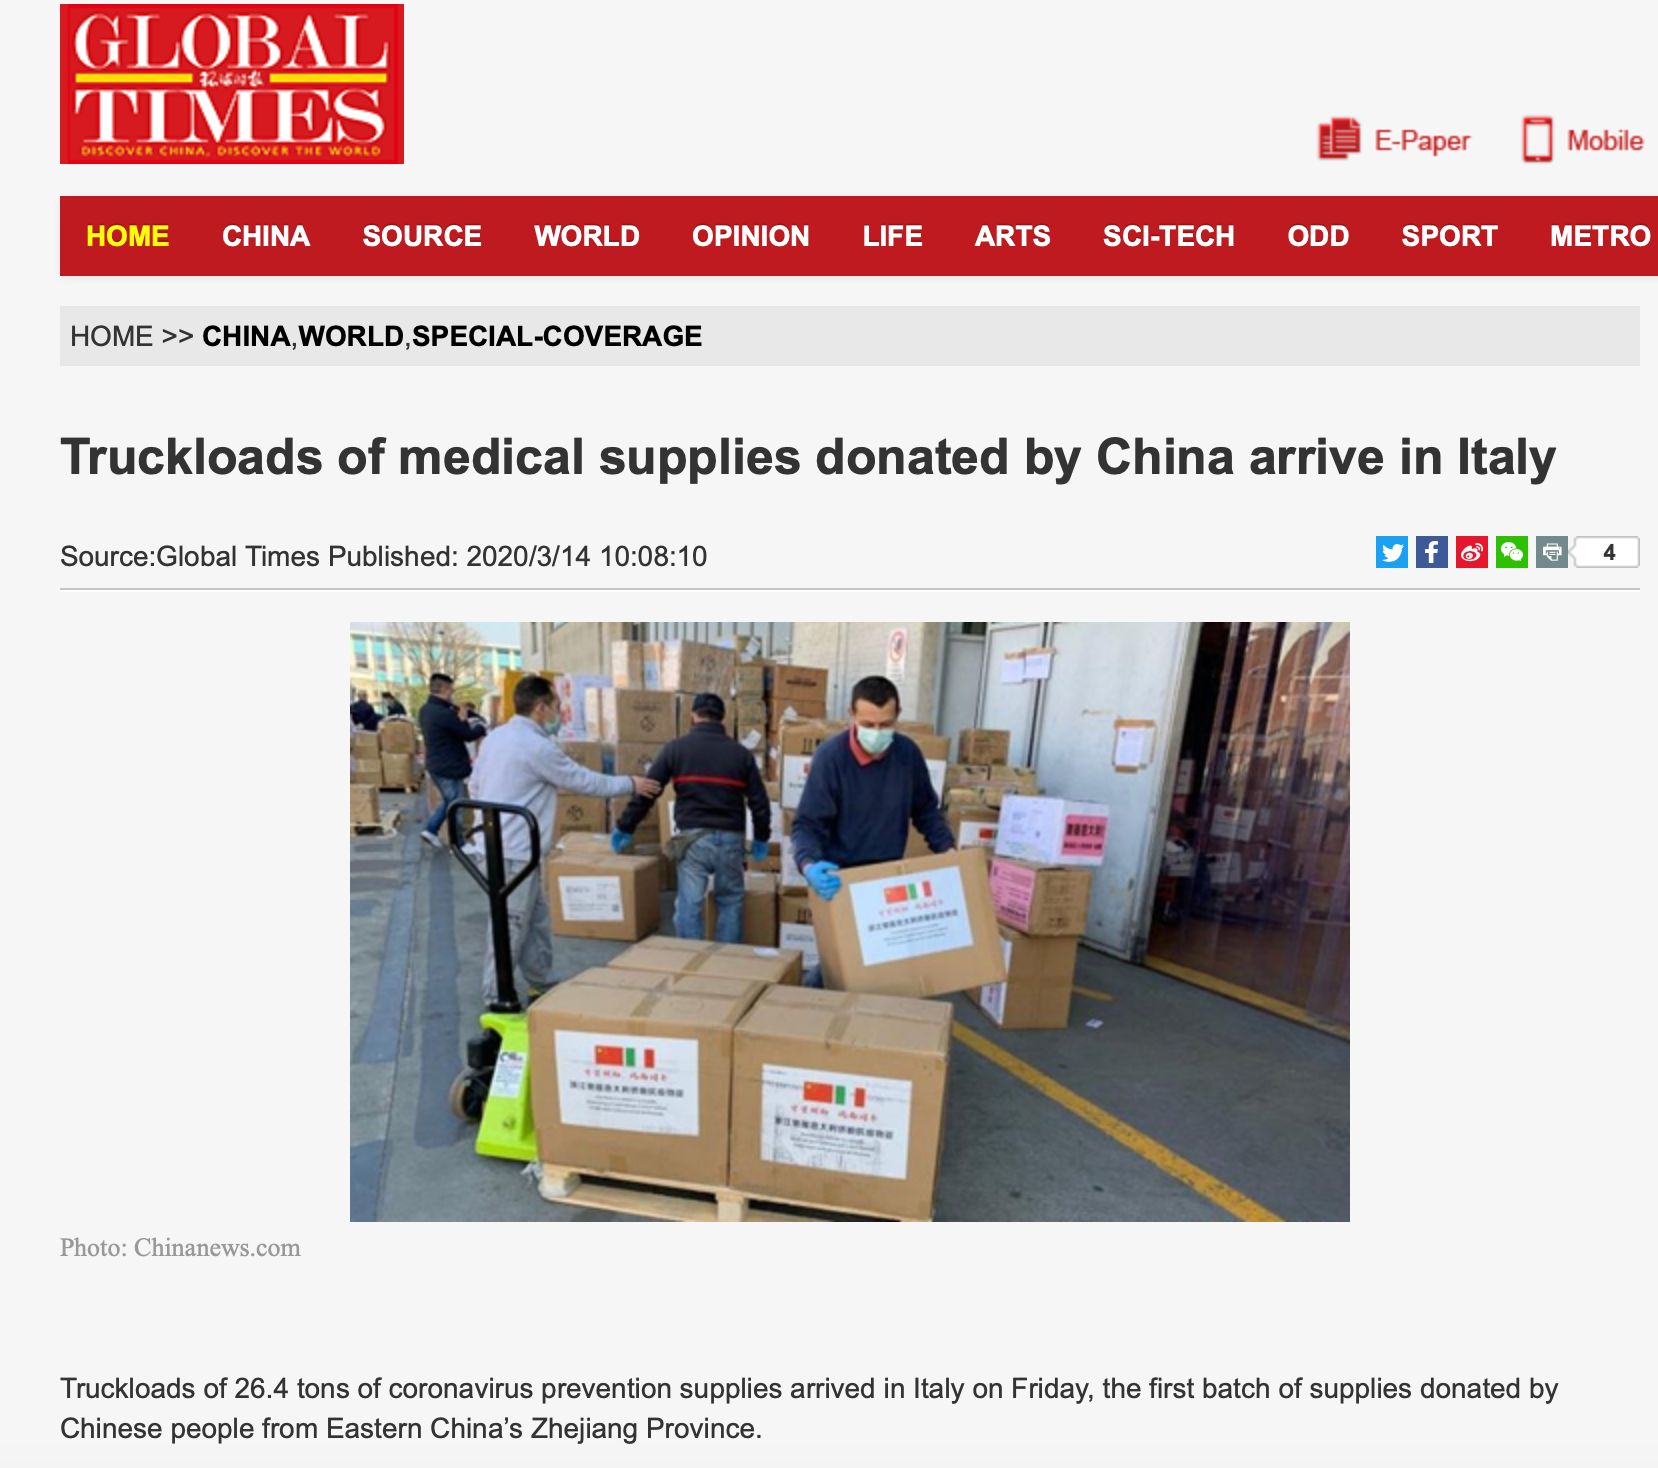 Náklad medicínských zásob darovaný Čínou dorazil do Itálie, informovala média